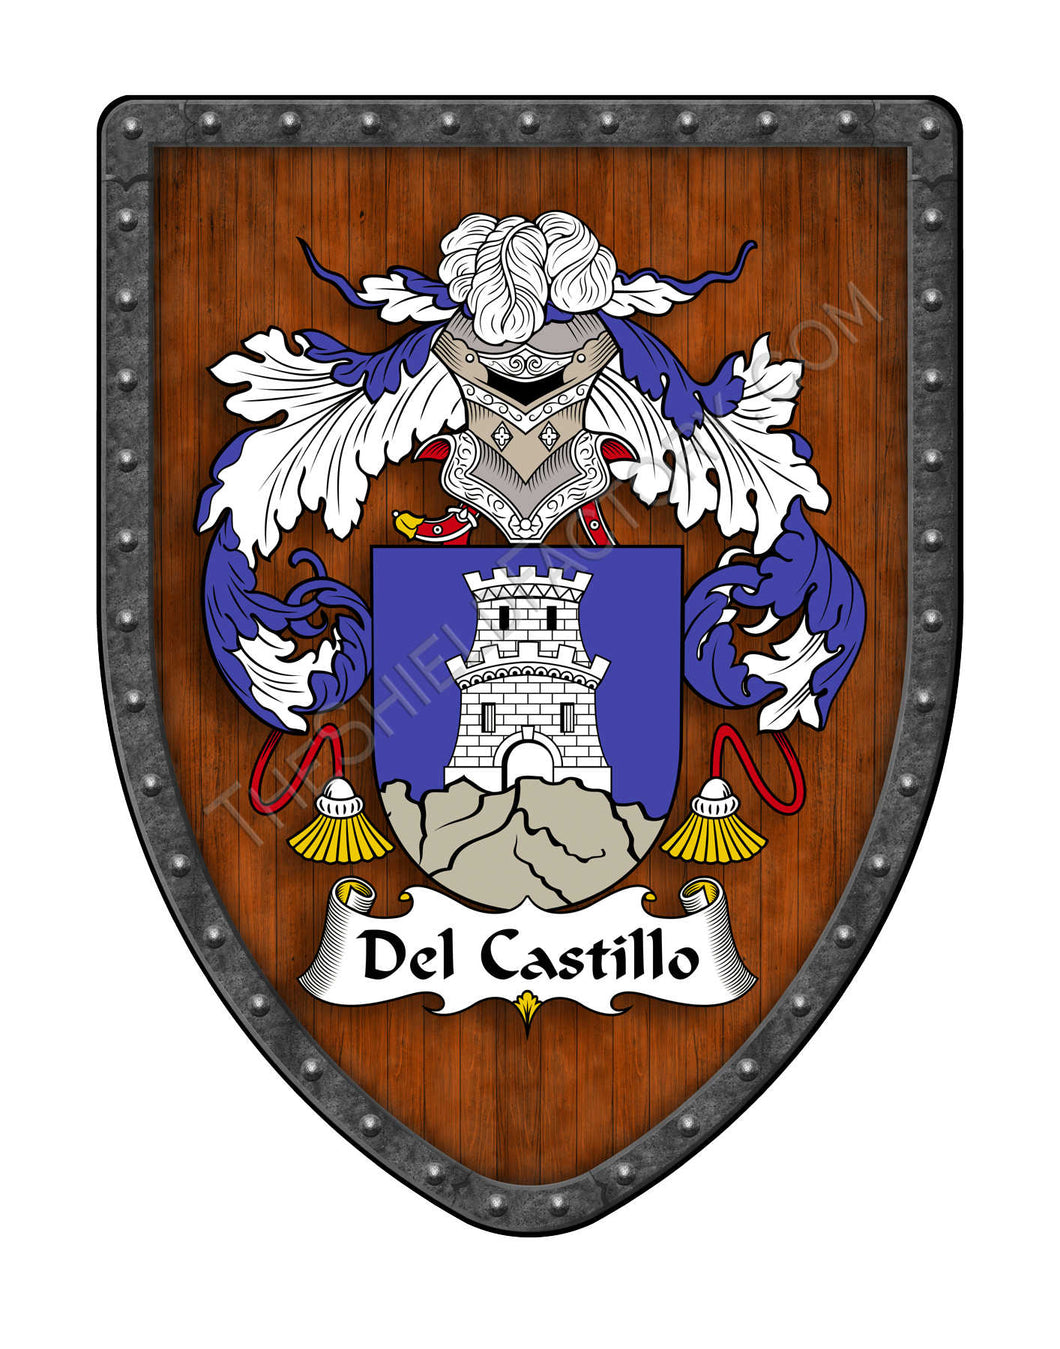 Del-Castillo Coat of Arms Shield Family Crest